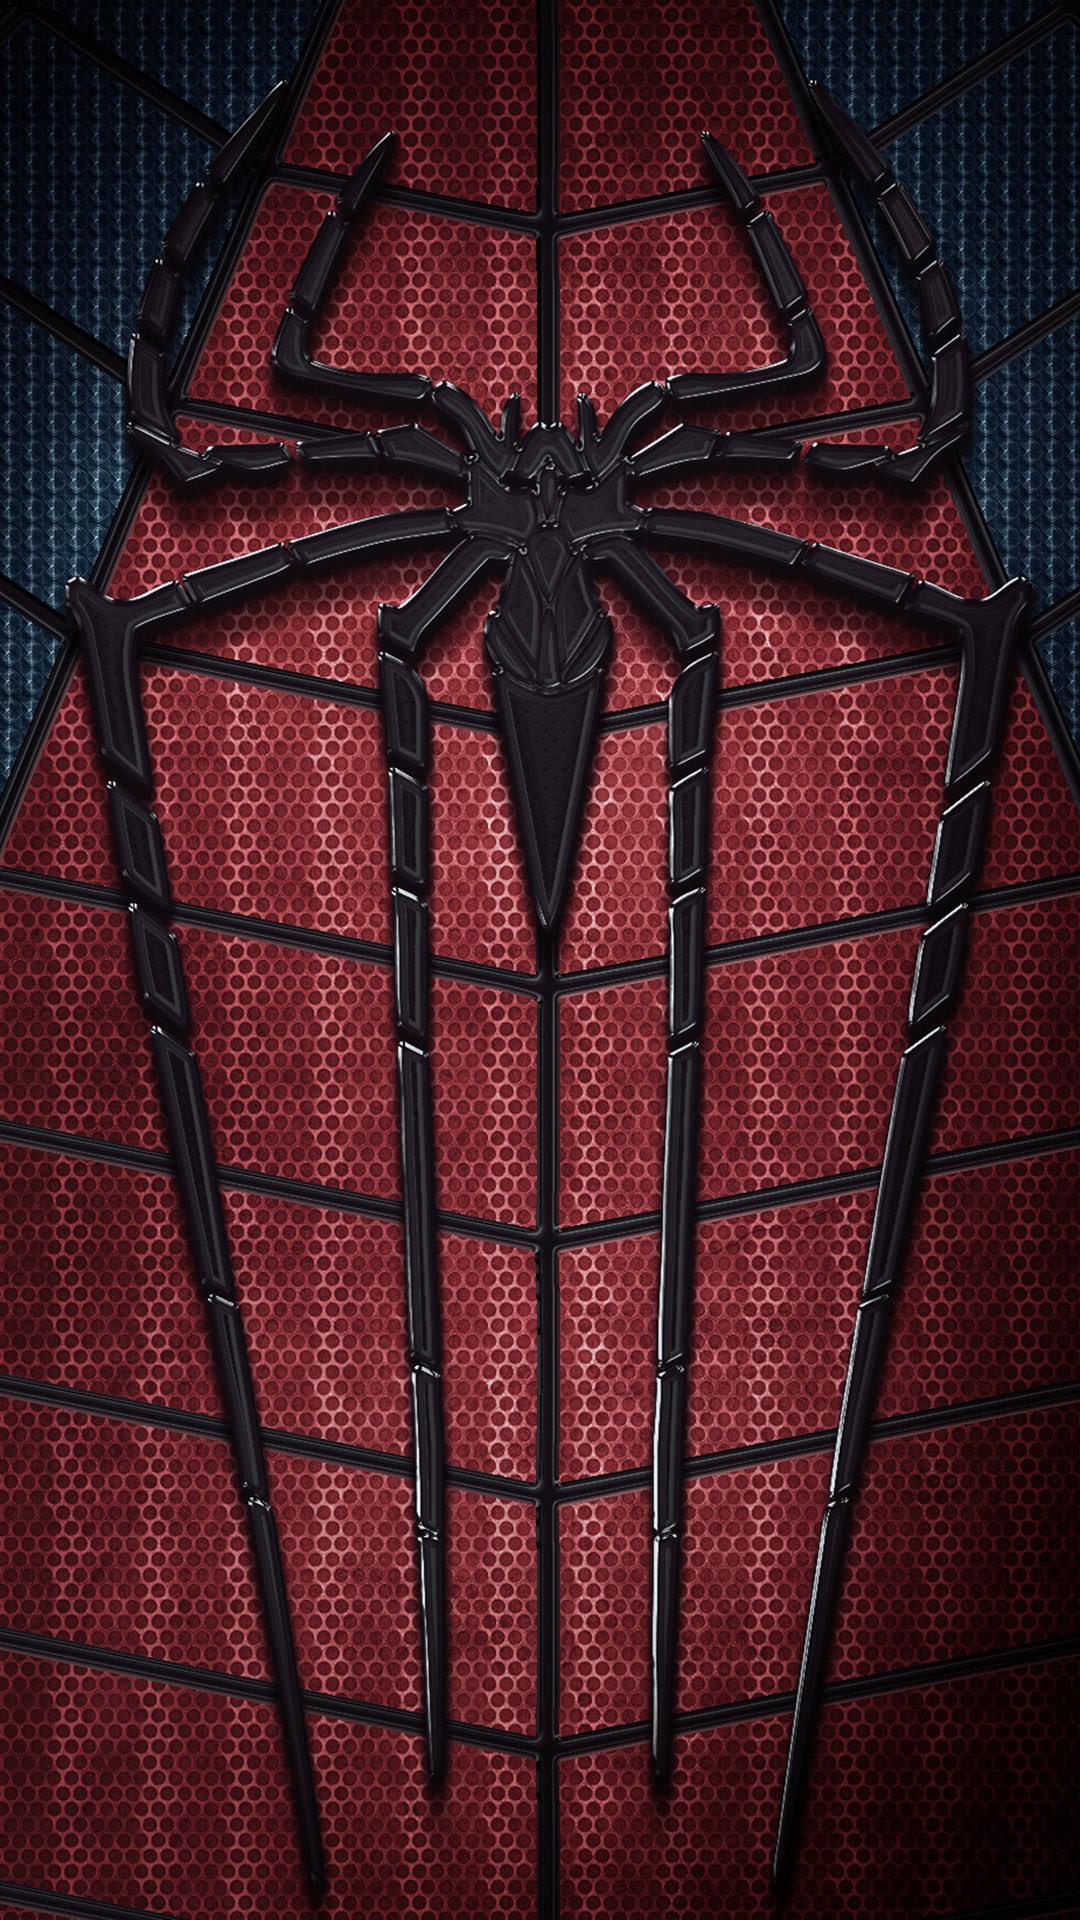 Hd Spiderman Wallpaper